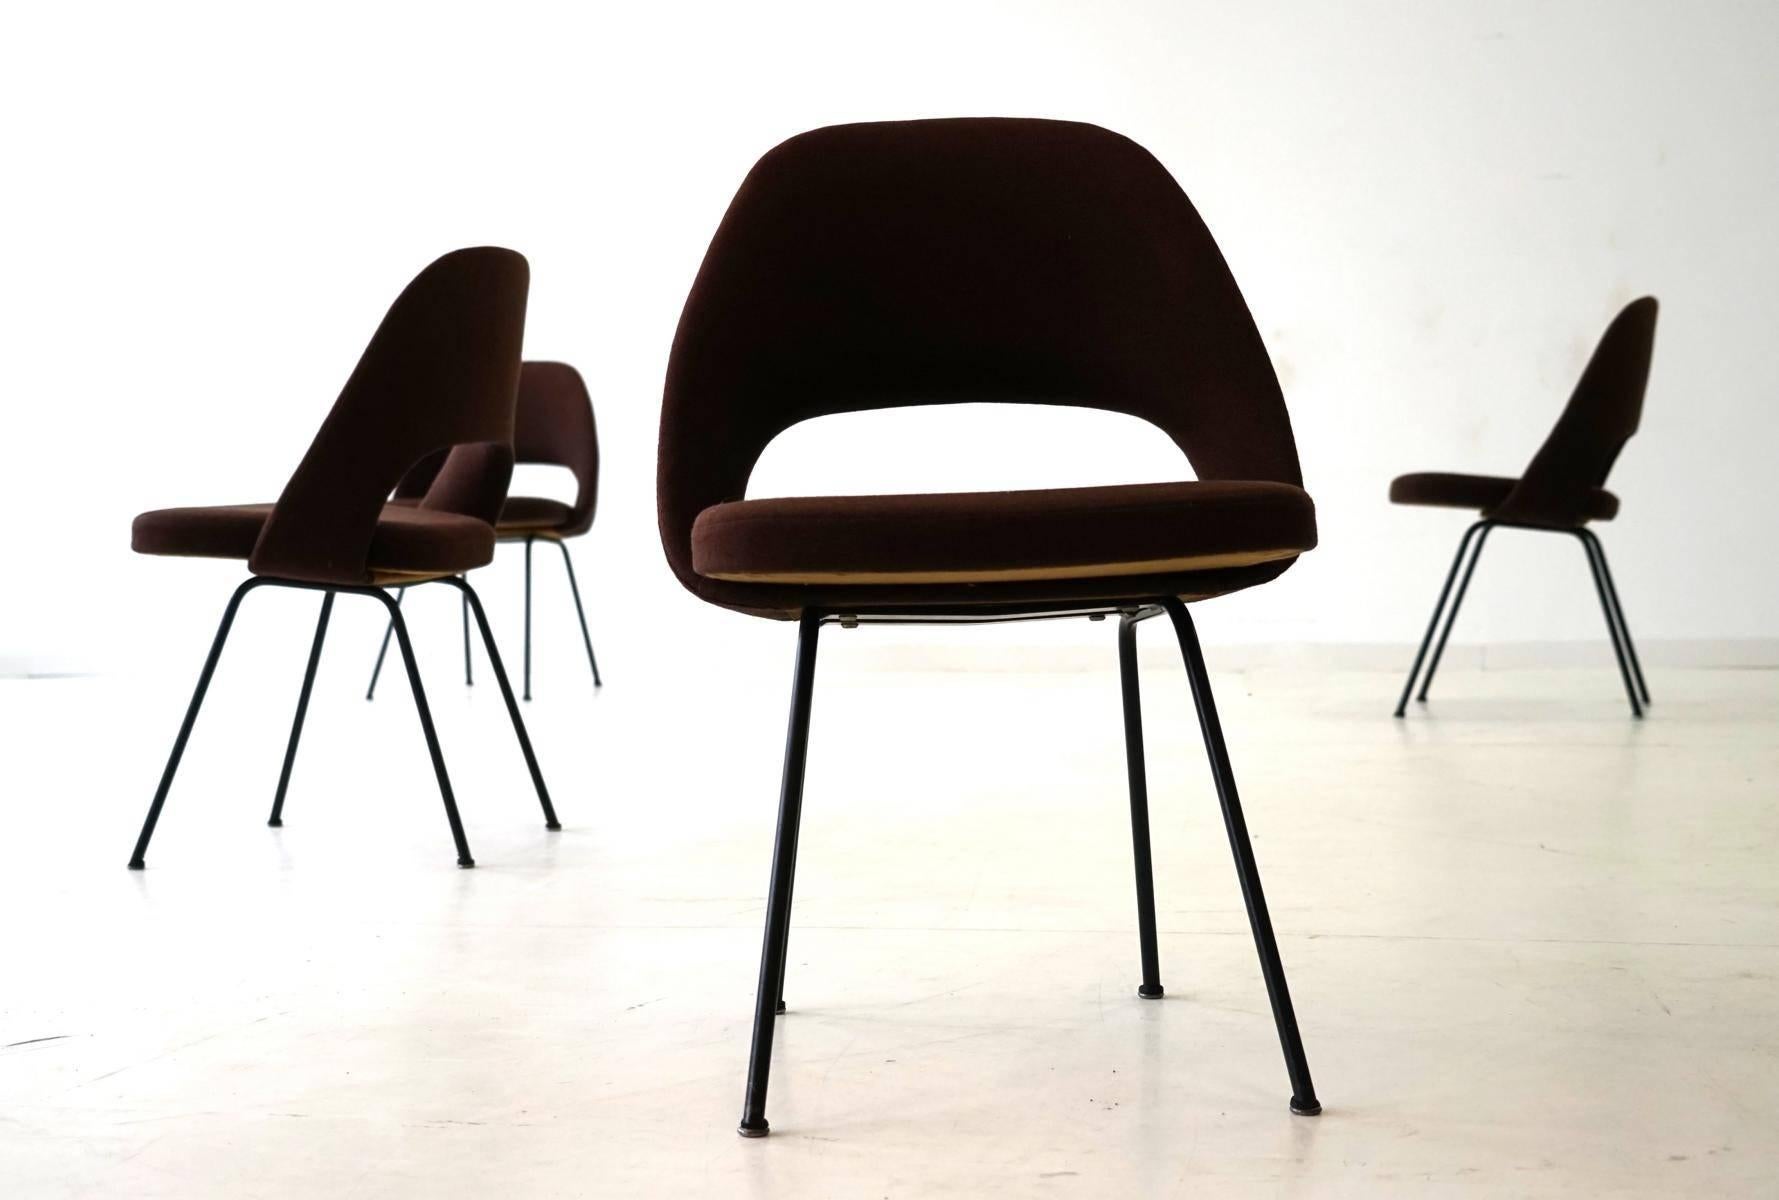 American Set of Four Dining Side Chair Model 72 U by Eero Saarinen Knoll International